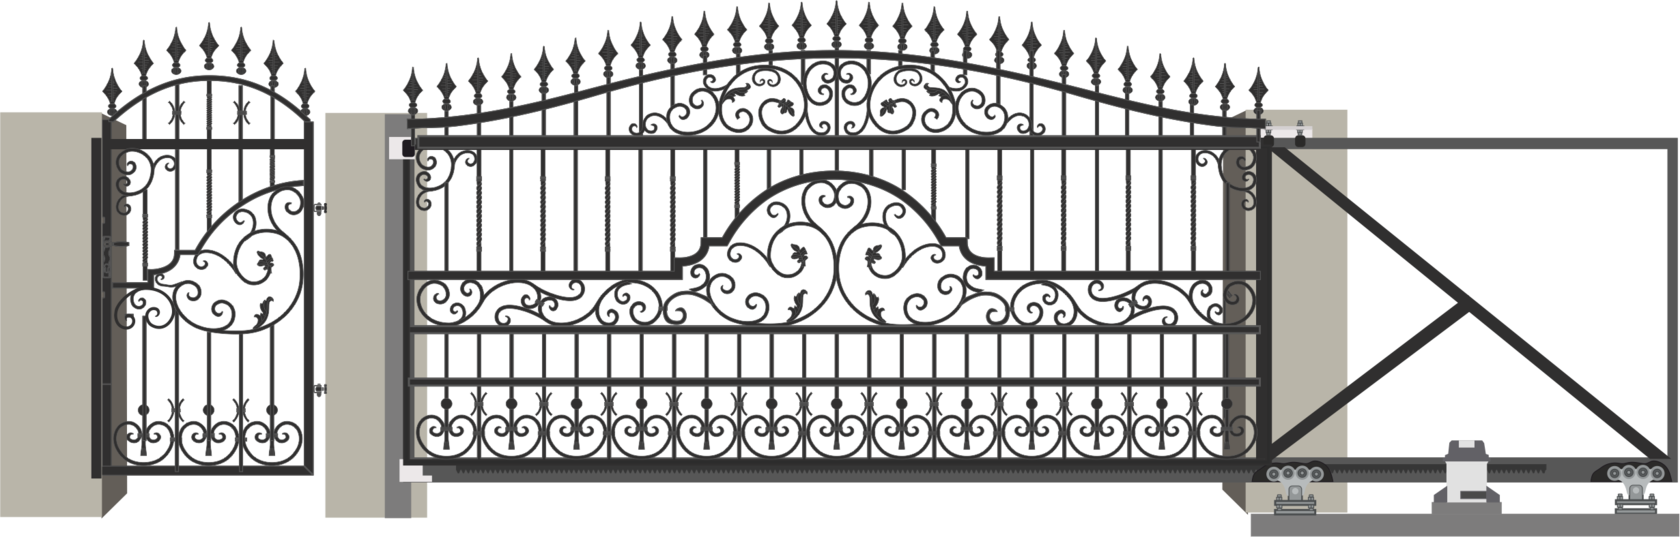 Кованые откатные ворота с калиткой: фото